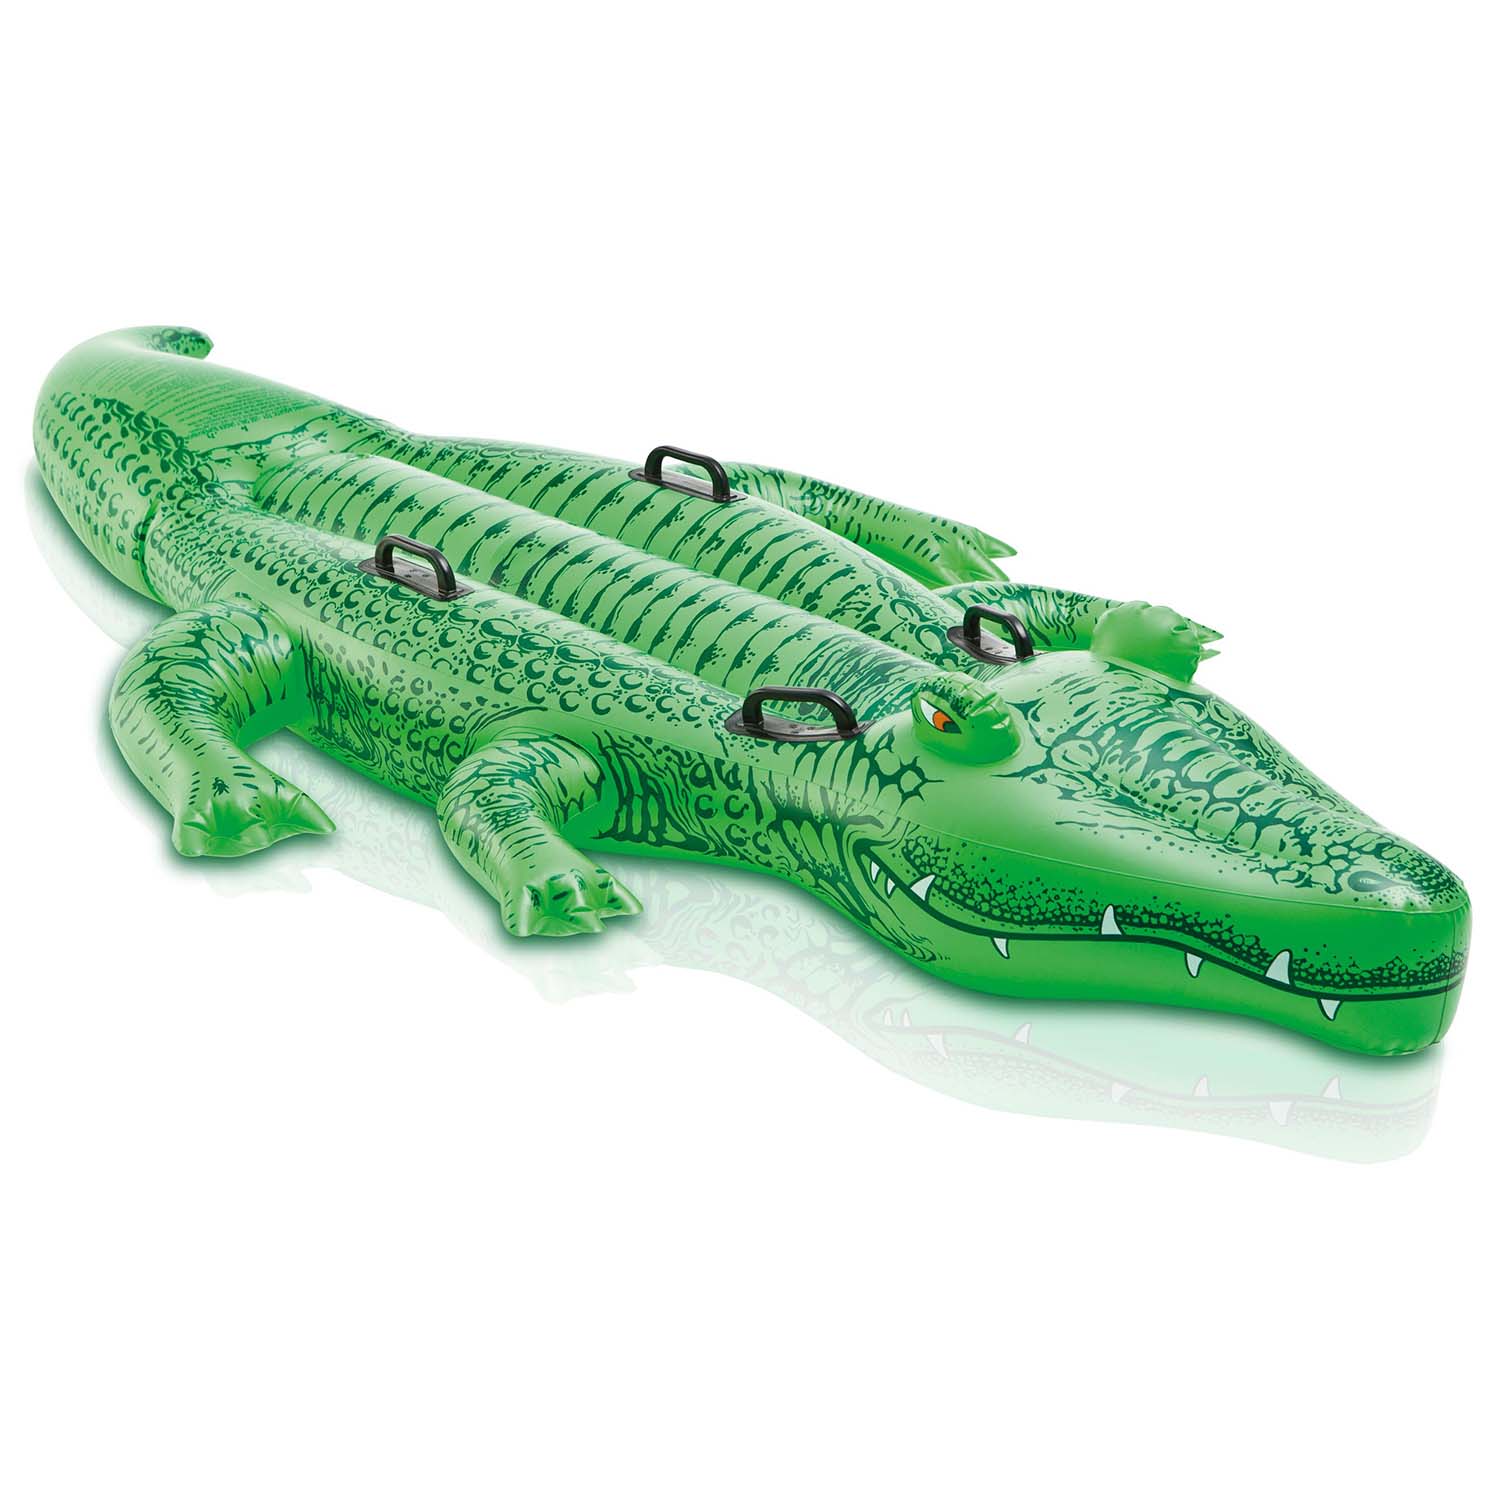 Intex Badetier Krokodil Schwimmtier Reittier für Pool Lounge Badespielzeug 57551 